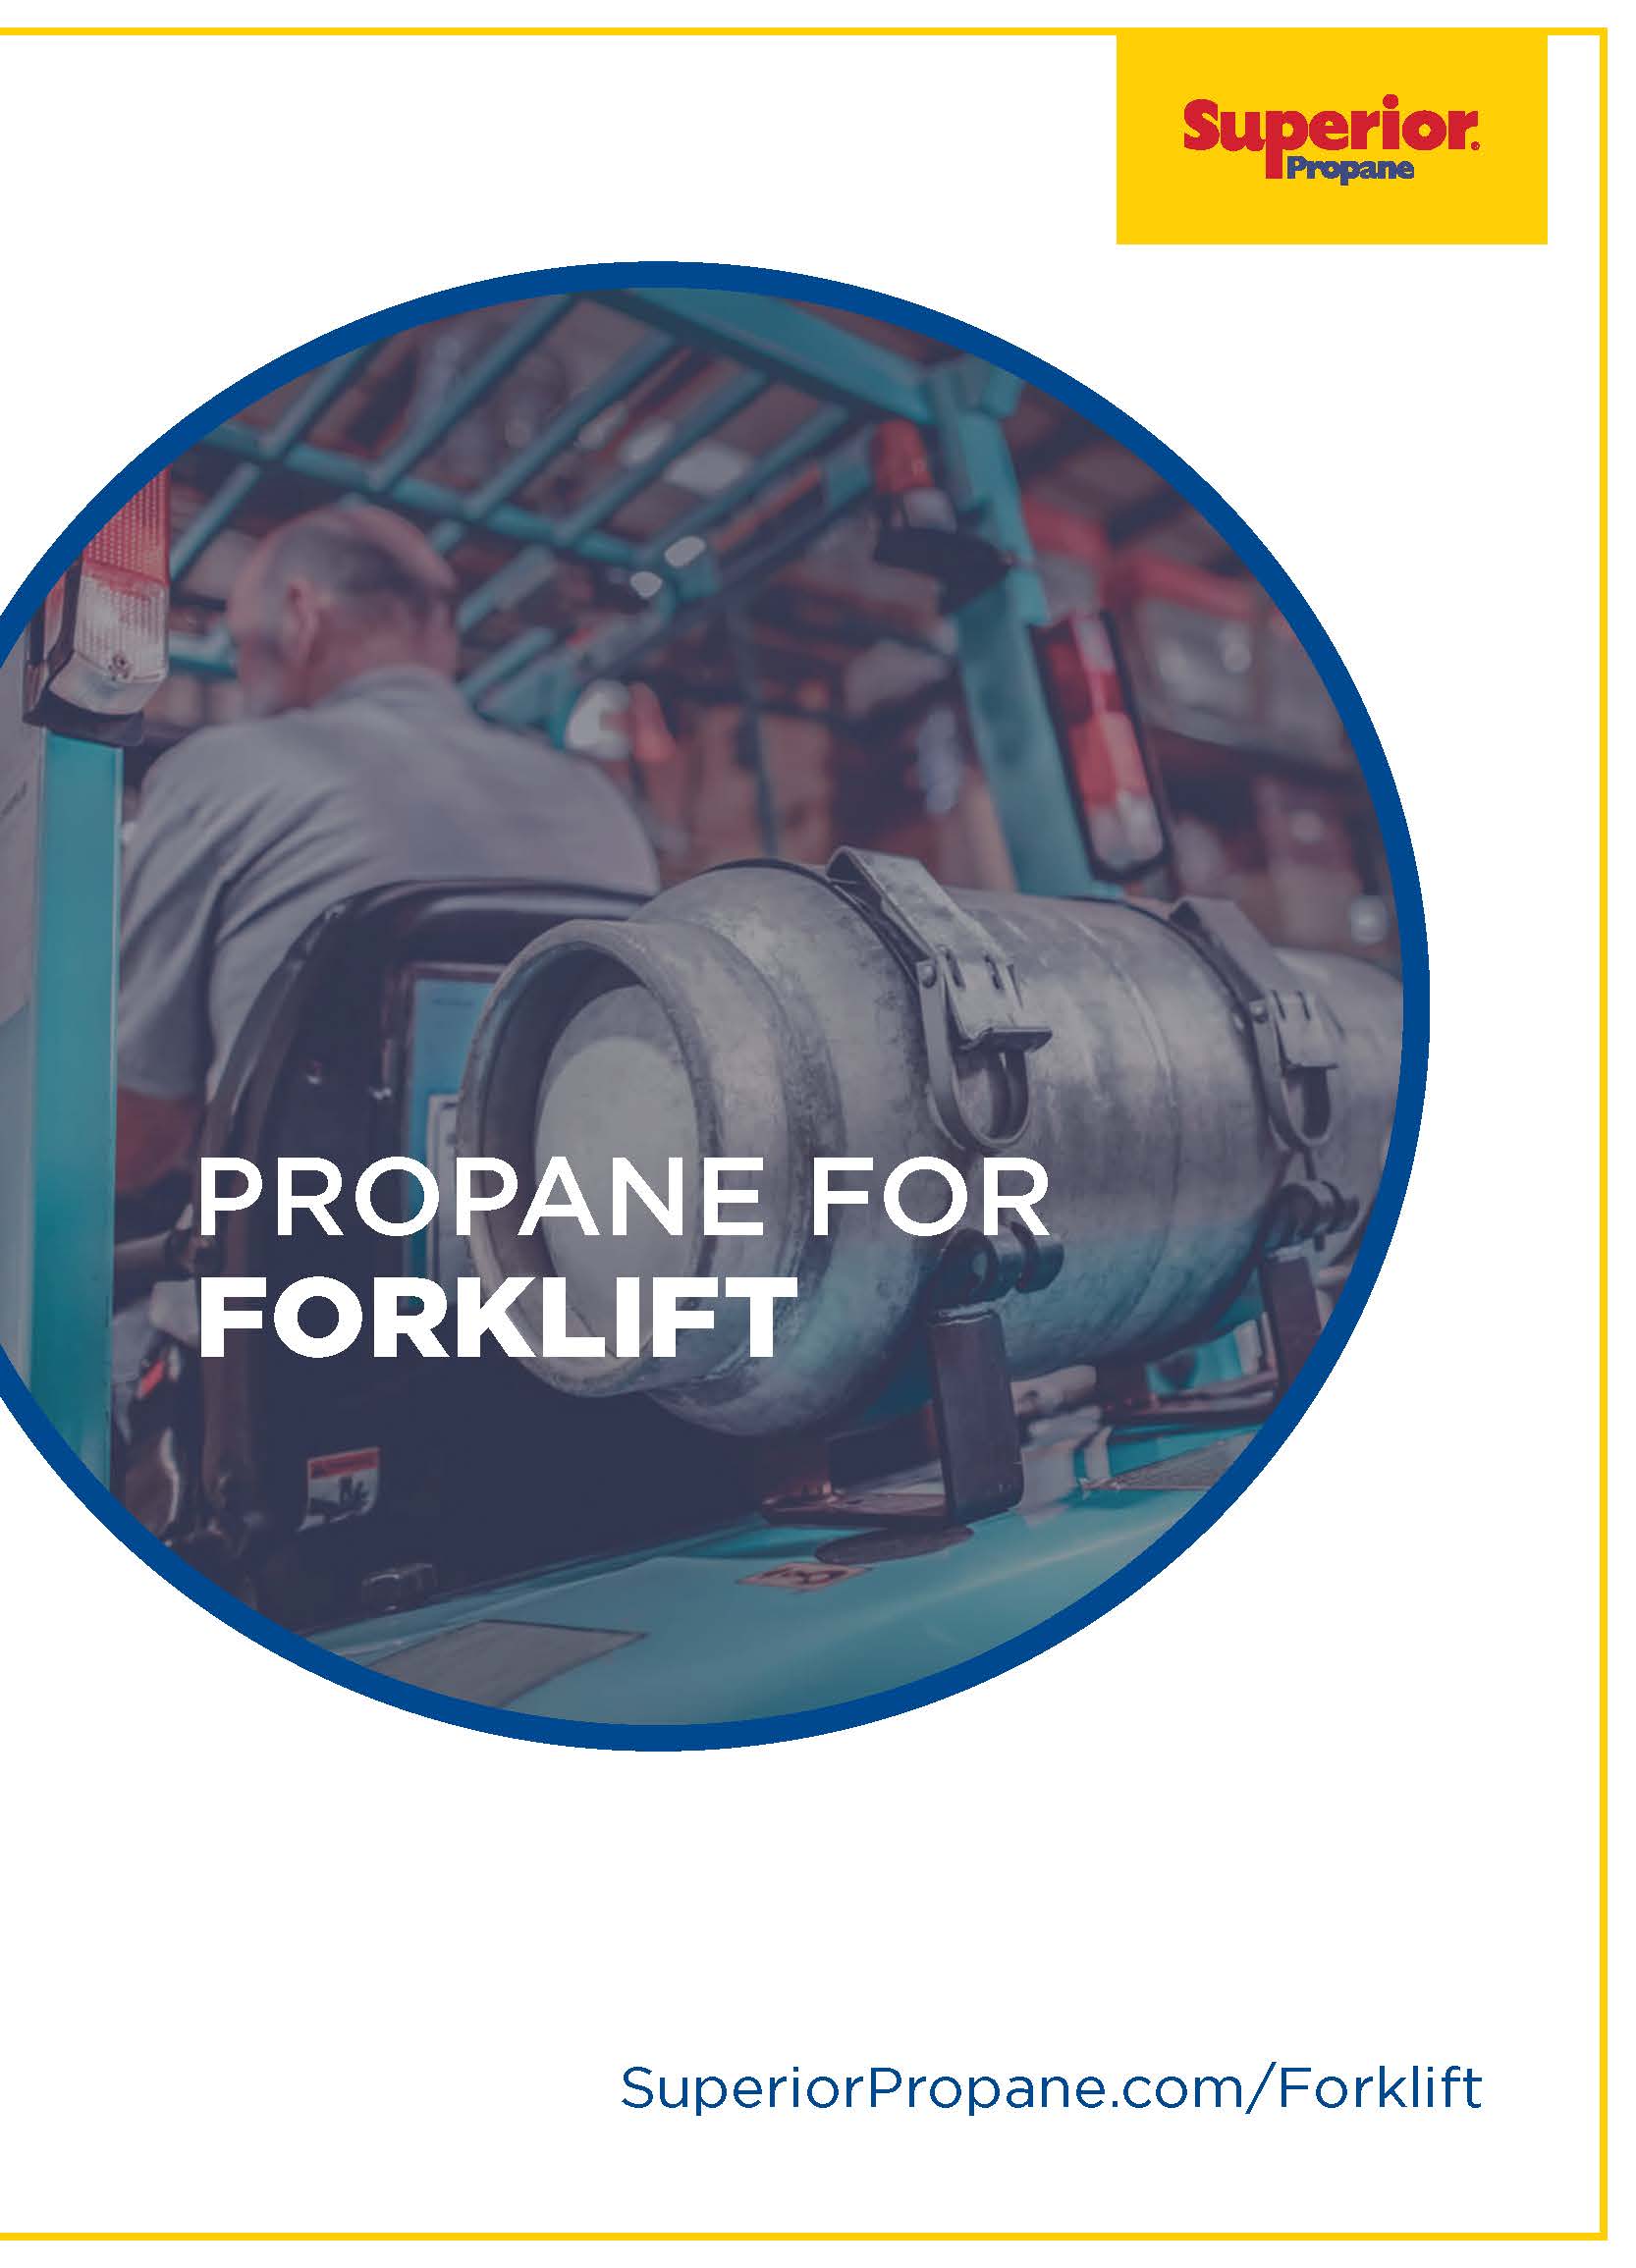 Propane for Forklift Brochure